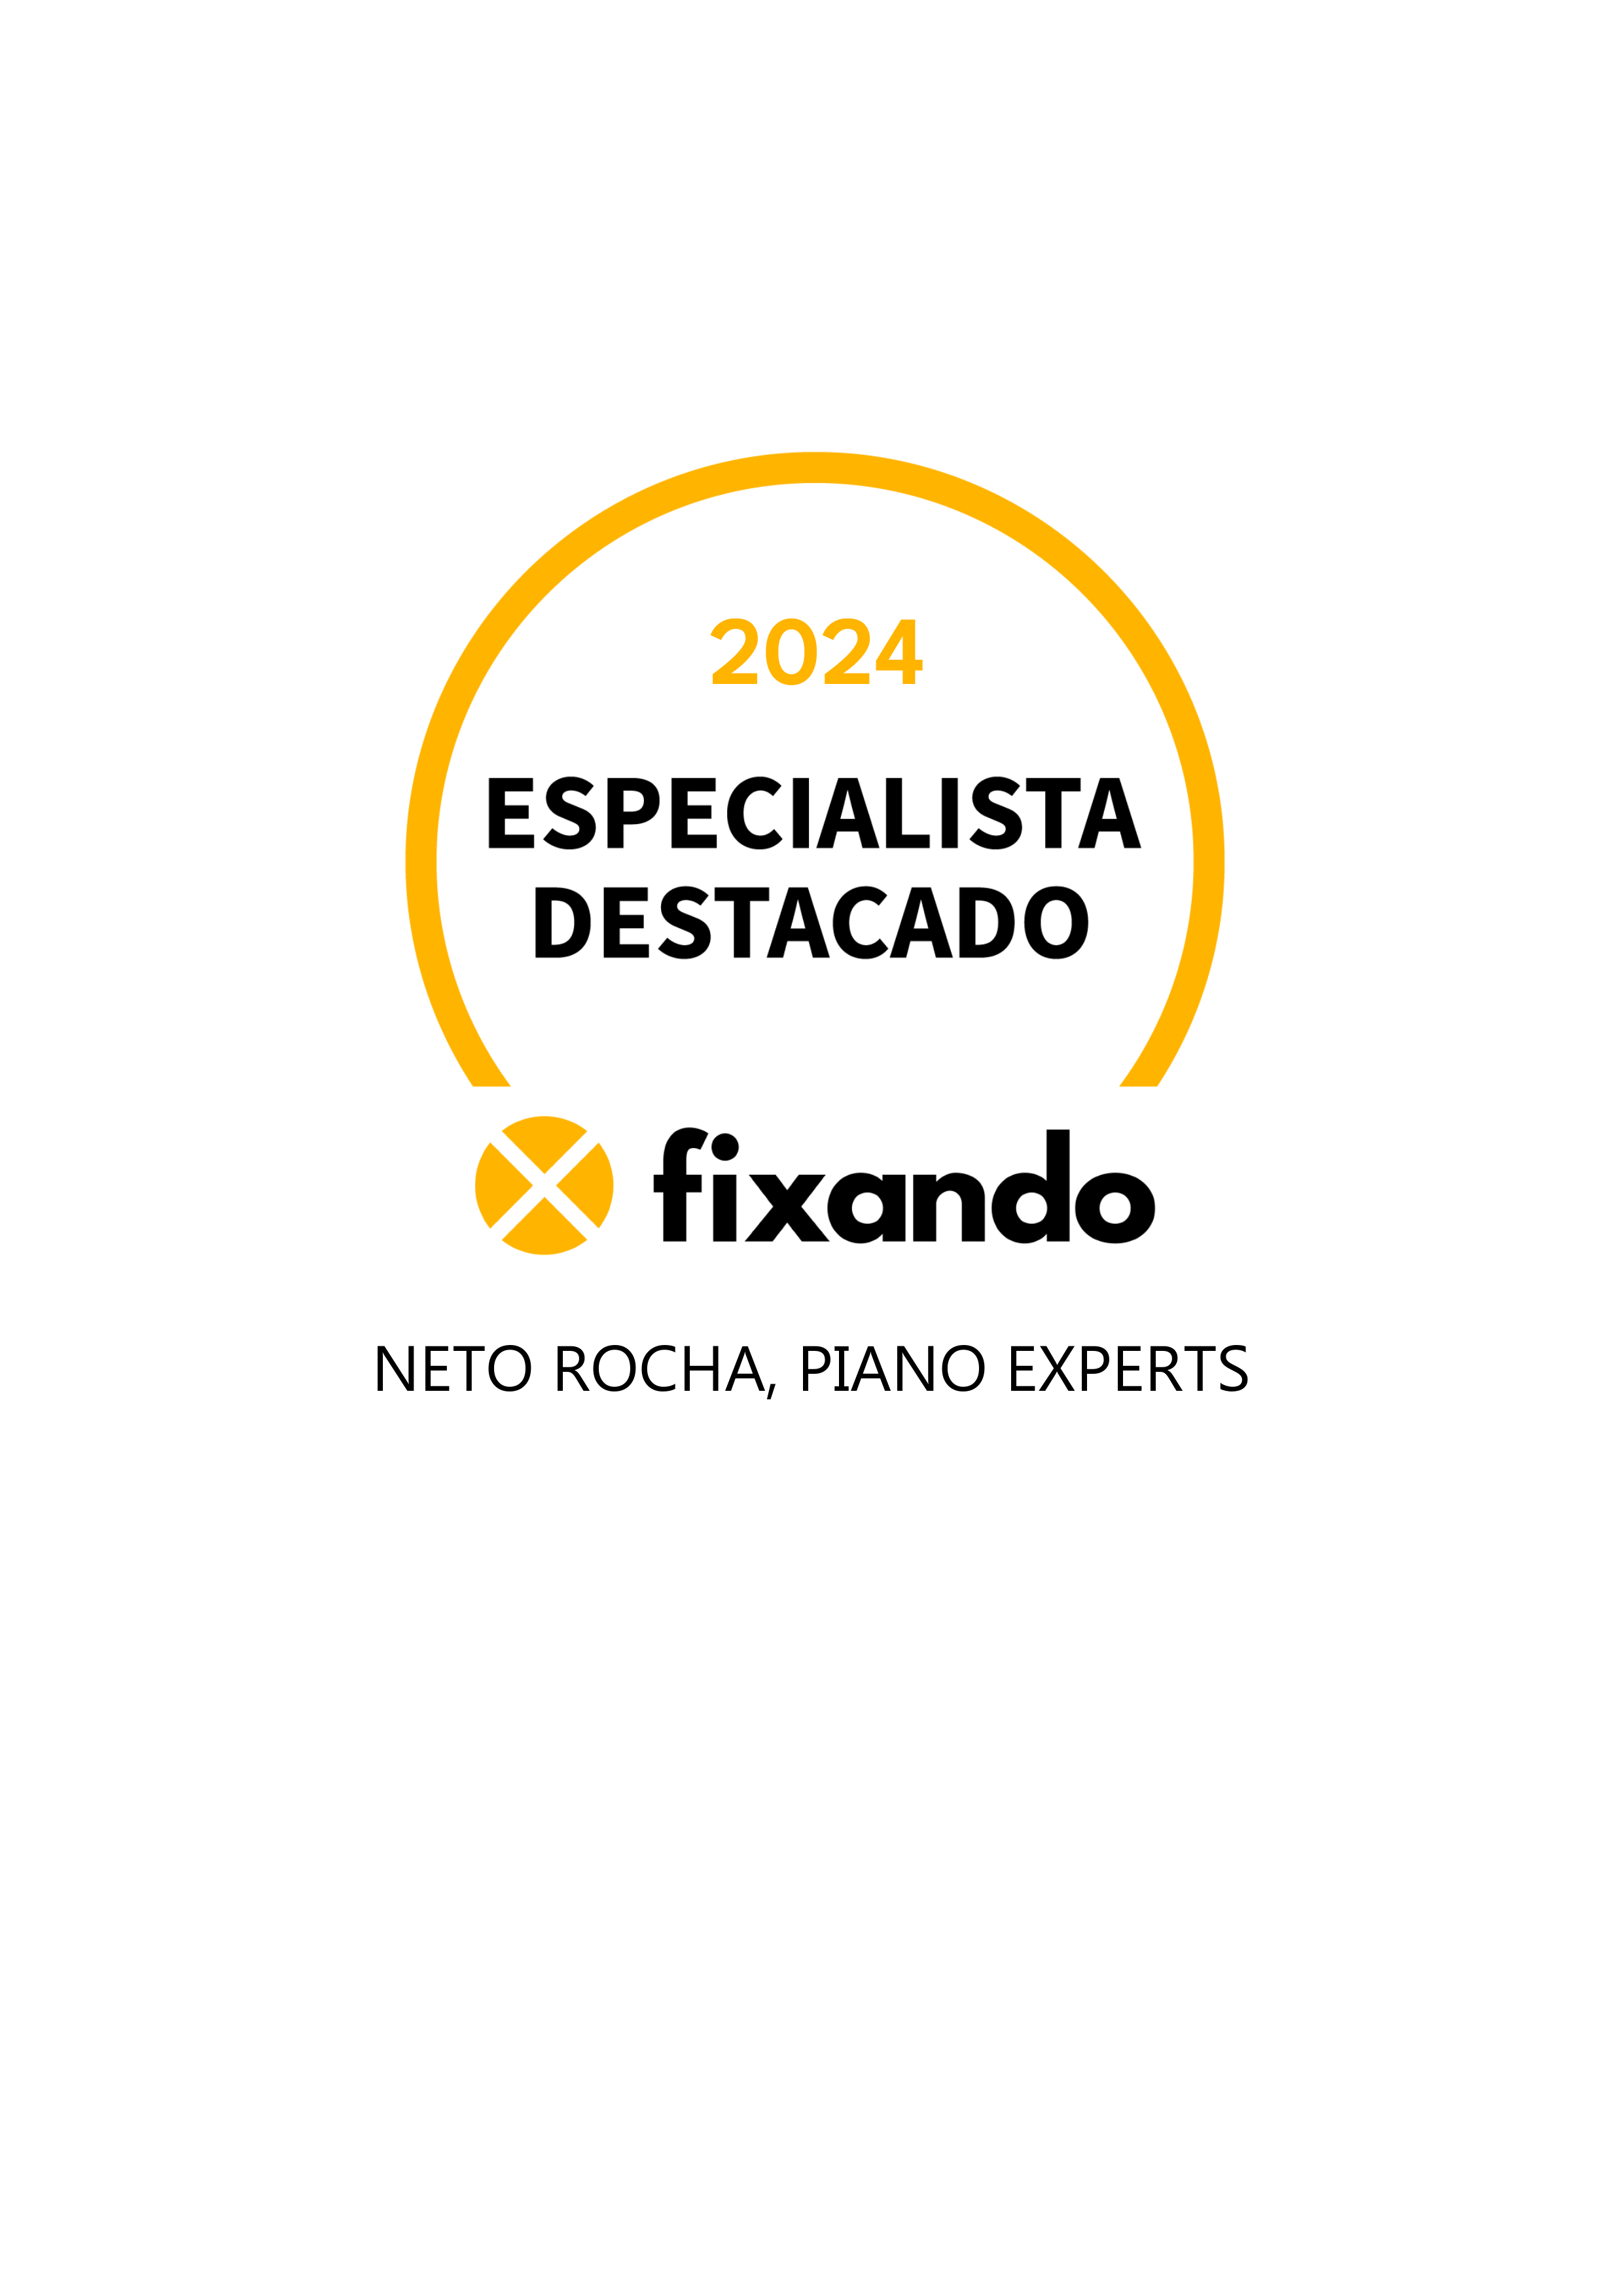 Neto Rocha, Piano Experts - Paredes - Afinação de Piano